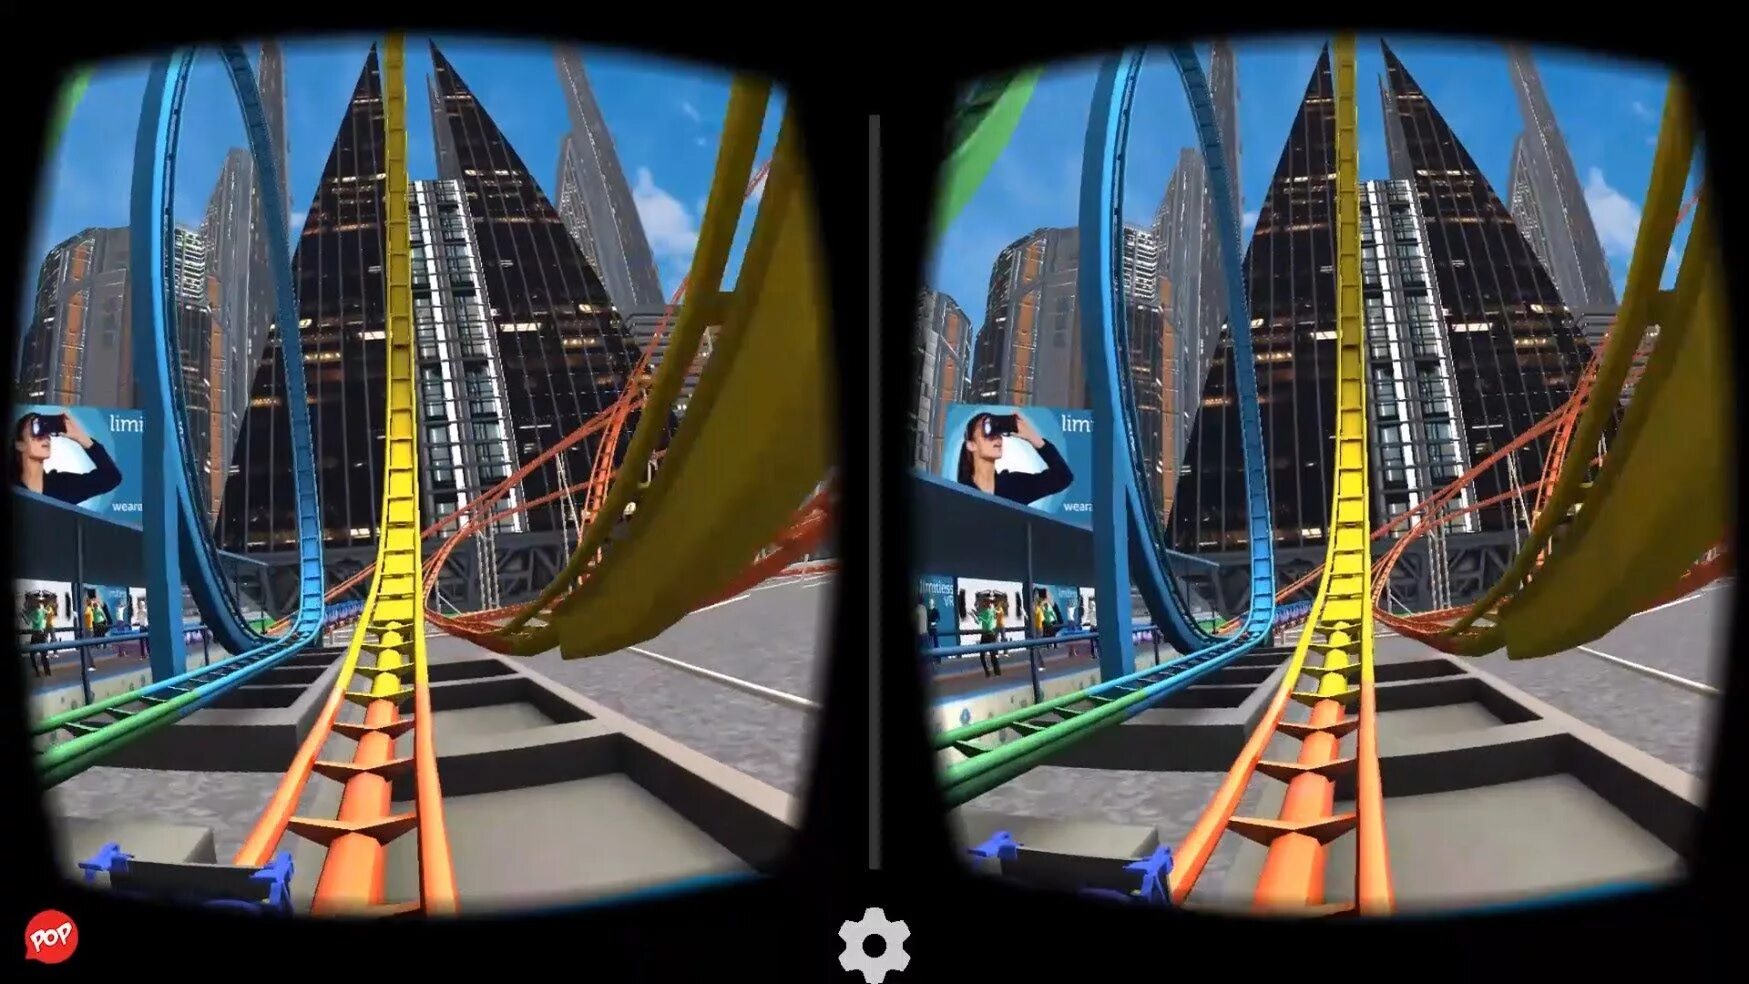 VR американские горки 360 для ВР очков. VR 9d 360 аттракцион. Американские горки на ps4 VR Rollercoaster Legends. Американские горки Rollercoaster в Oculus VR.